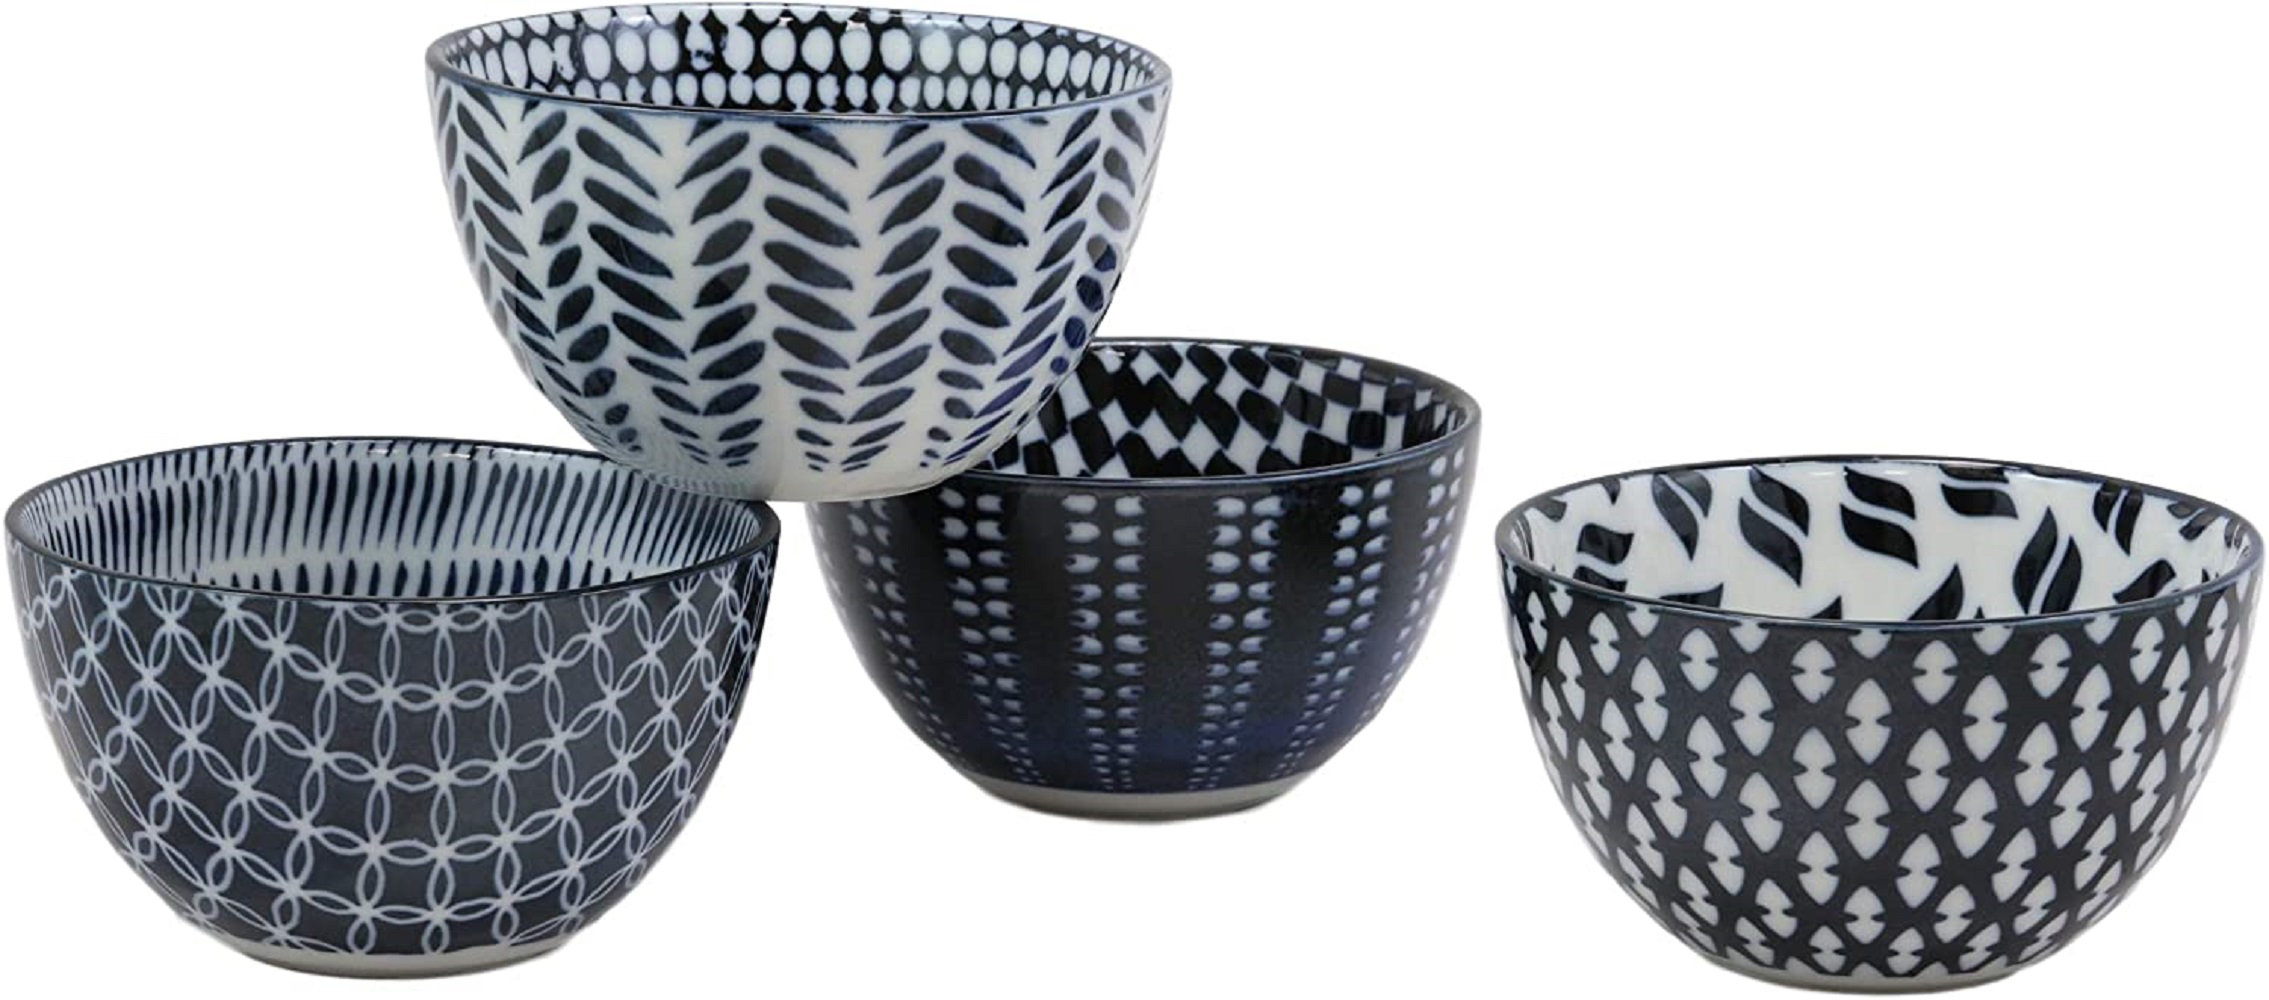 https://assets.wfcdn.com/im/20837178/compr-r85/2159/215946719/red-barrel-studio-made-in-japan-stylish-symmetry-contemporary-design-5diameter-16oz-porcelain-bowls-set-of-4-for-salad-ramen-pho-soup-cereal-home-and-kitchen-decorative-bowl-gift-set-blue-patterns.jpg